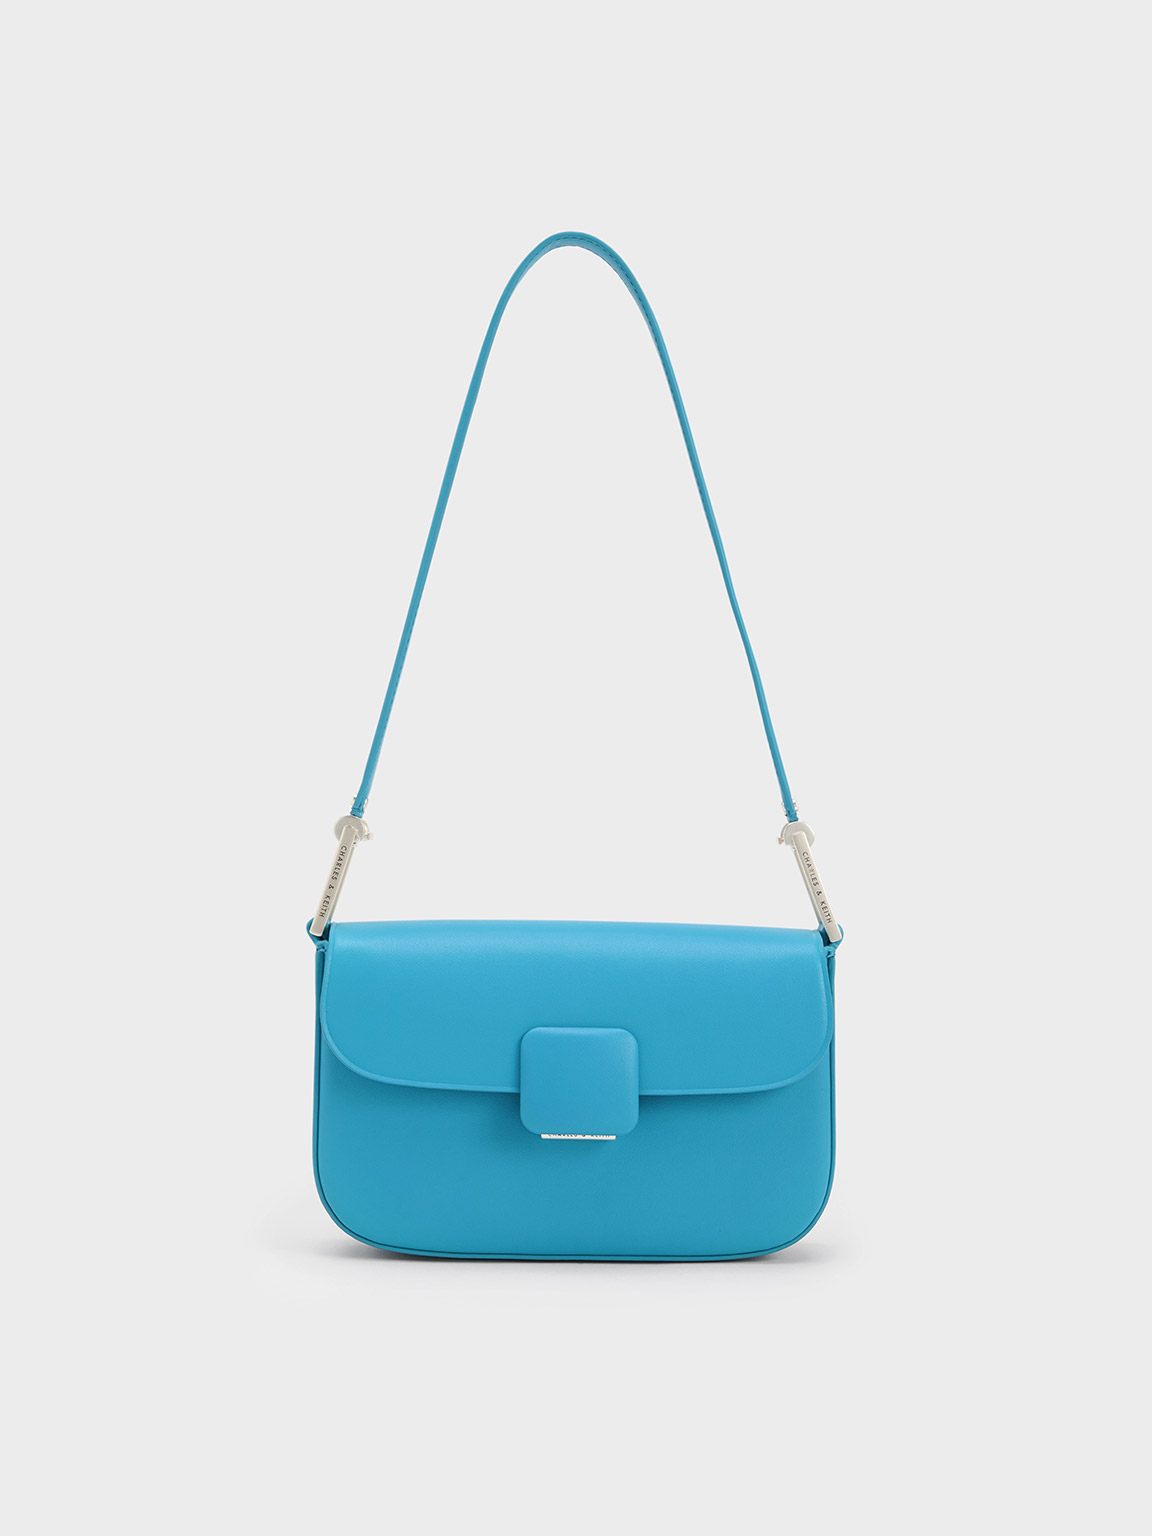 Clutch Bags – Hudson Blu Designs